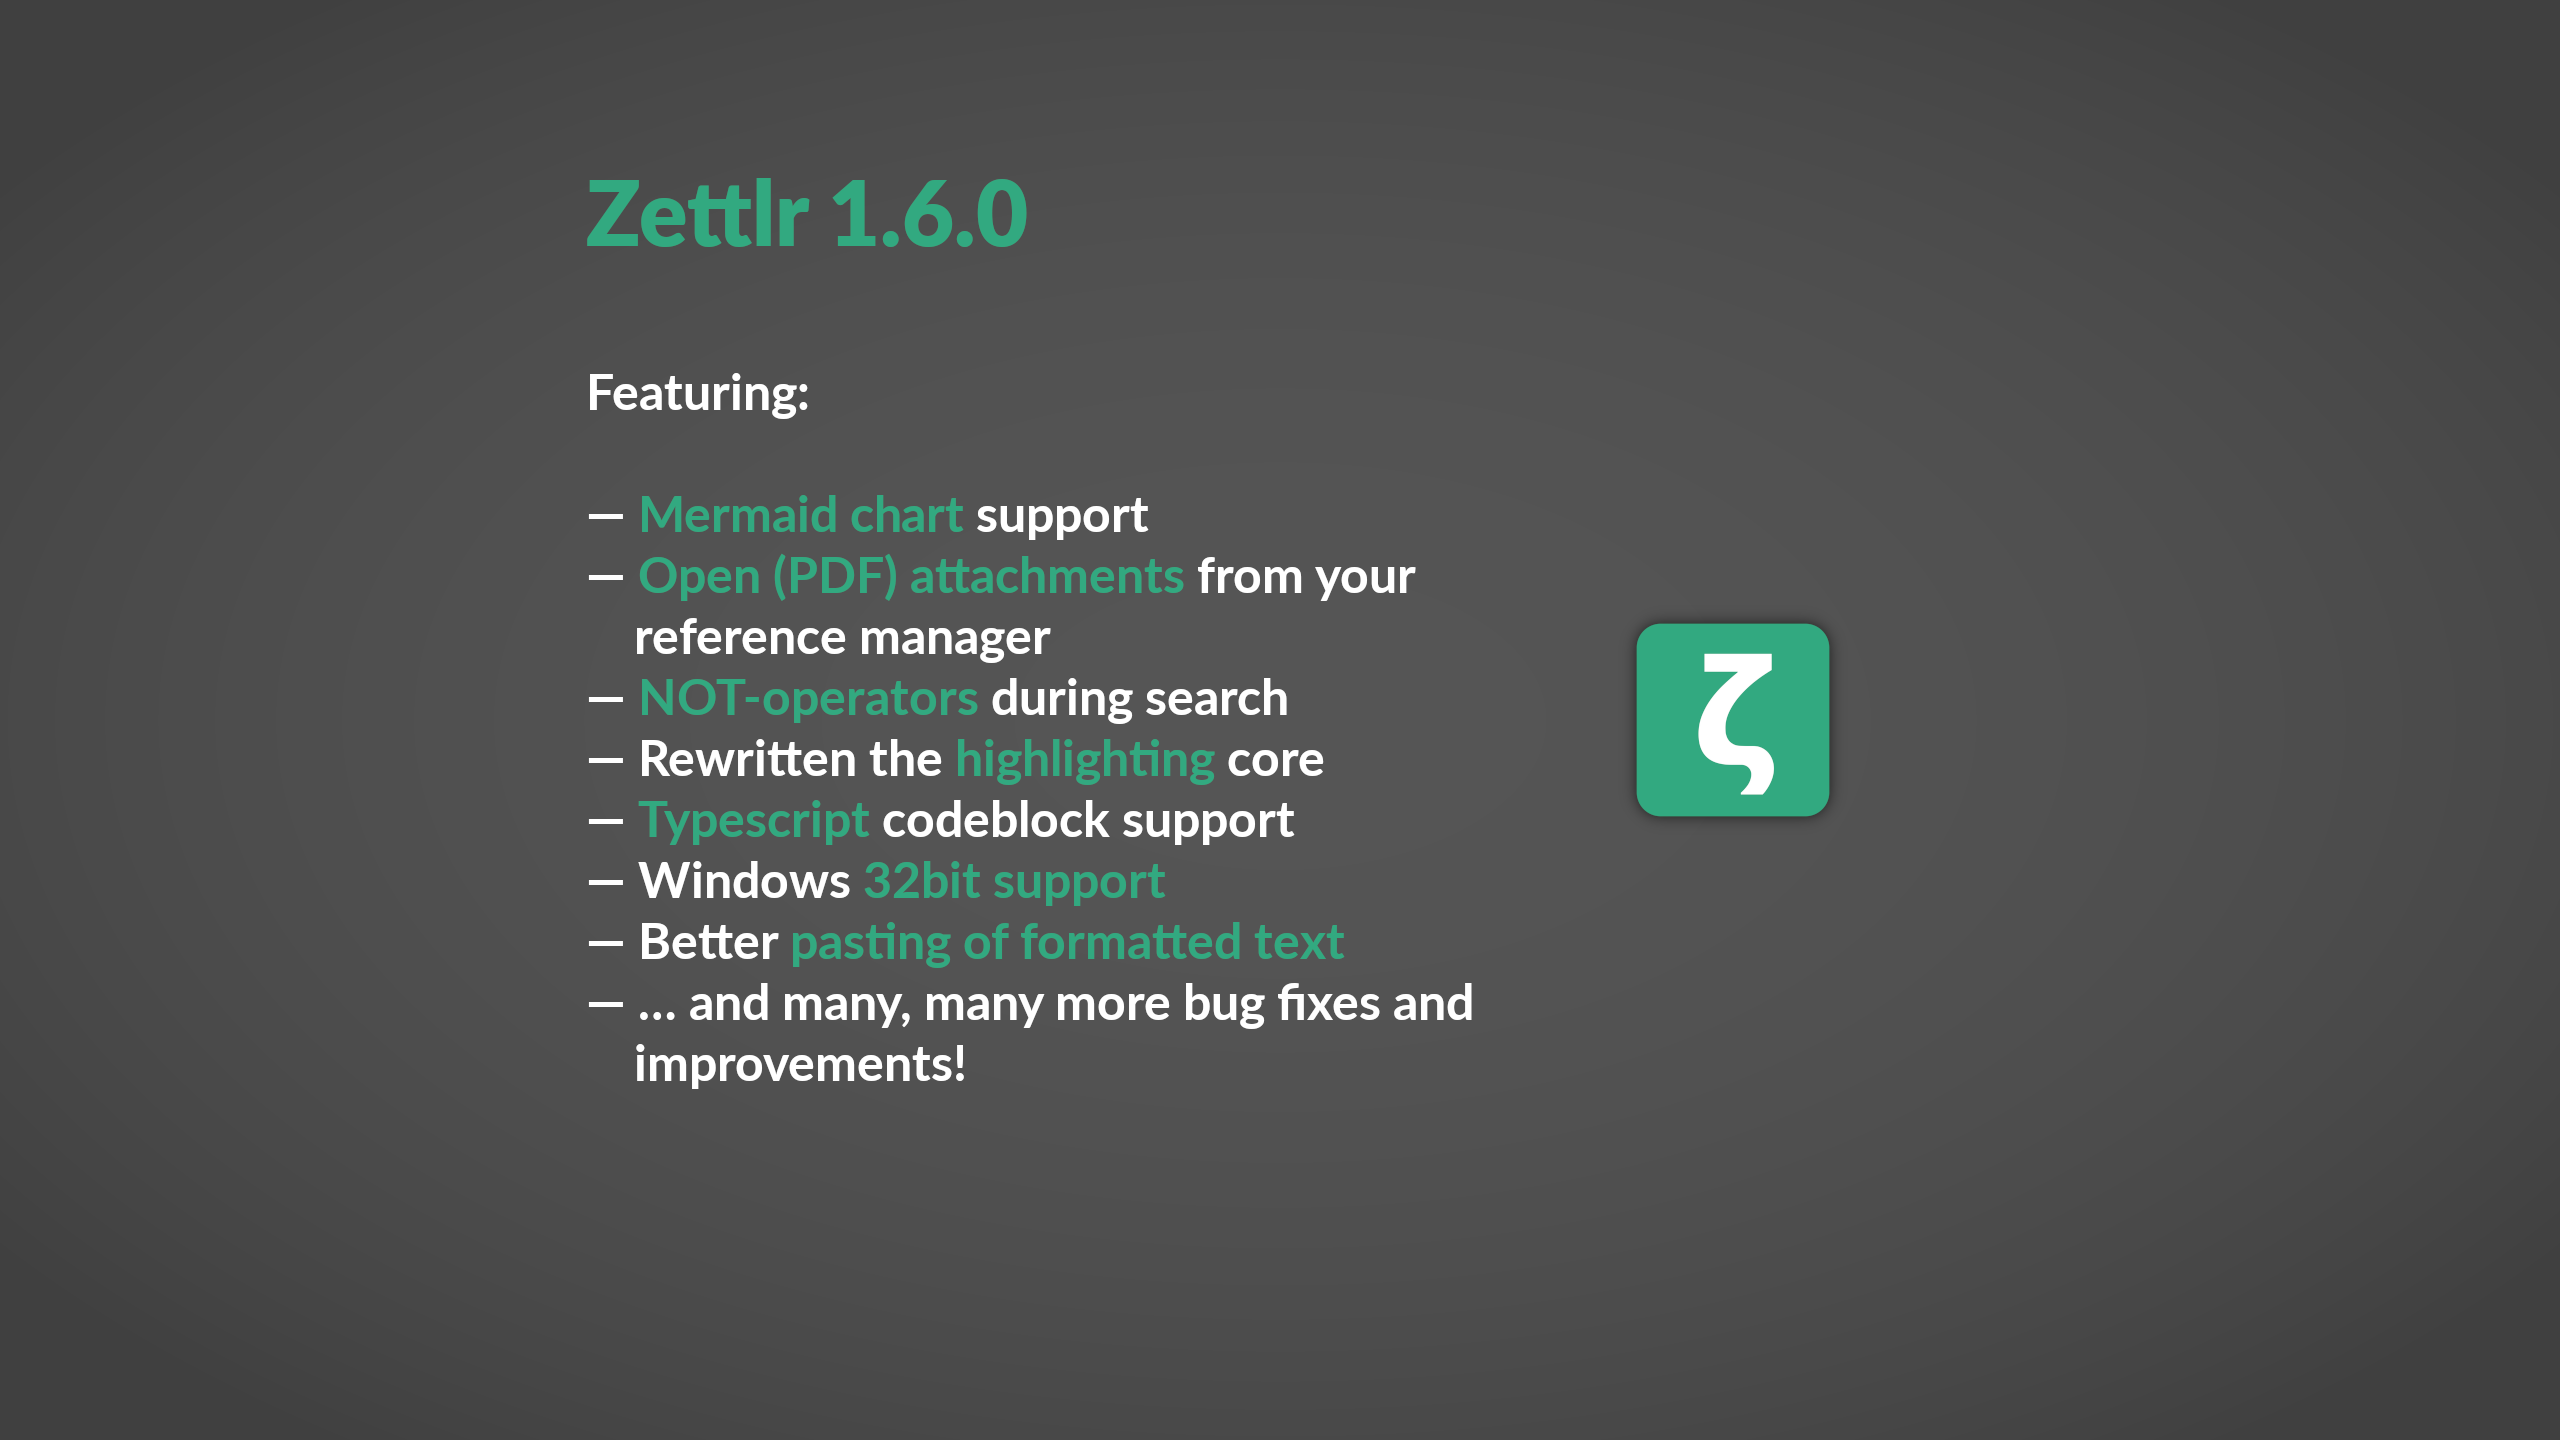 Zettlr 1.6.0 released